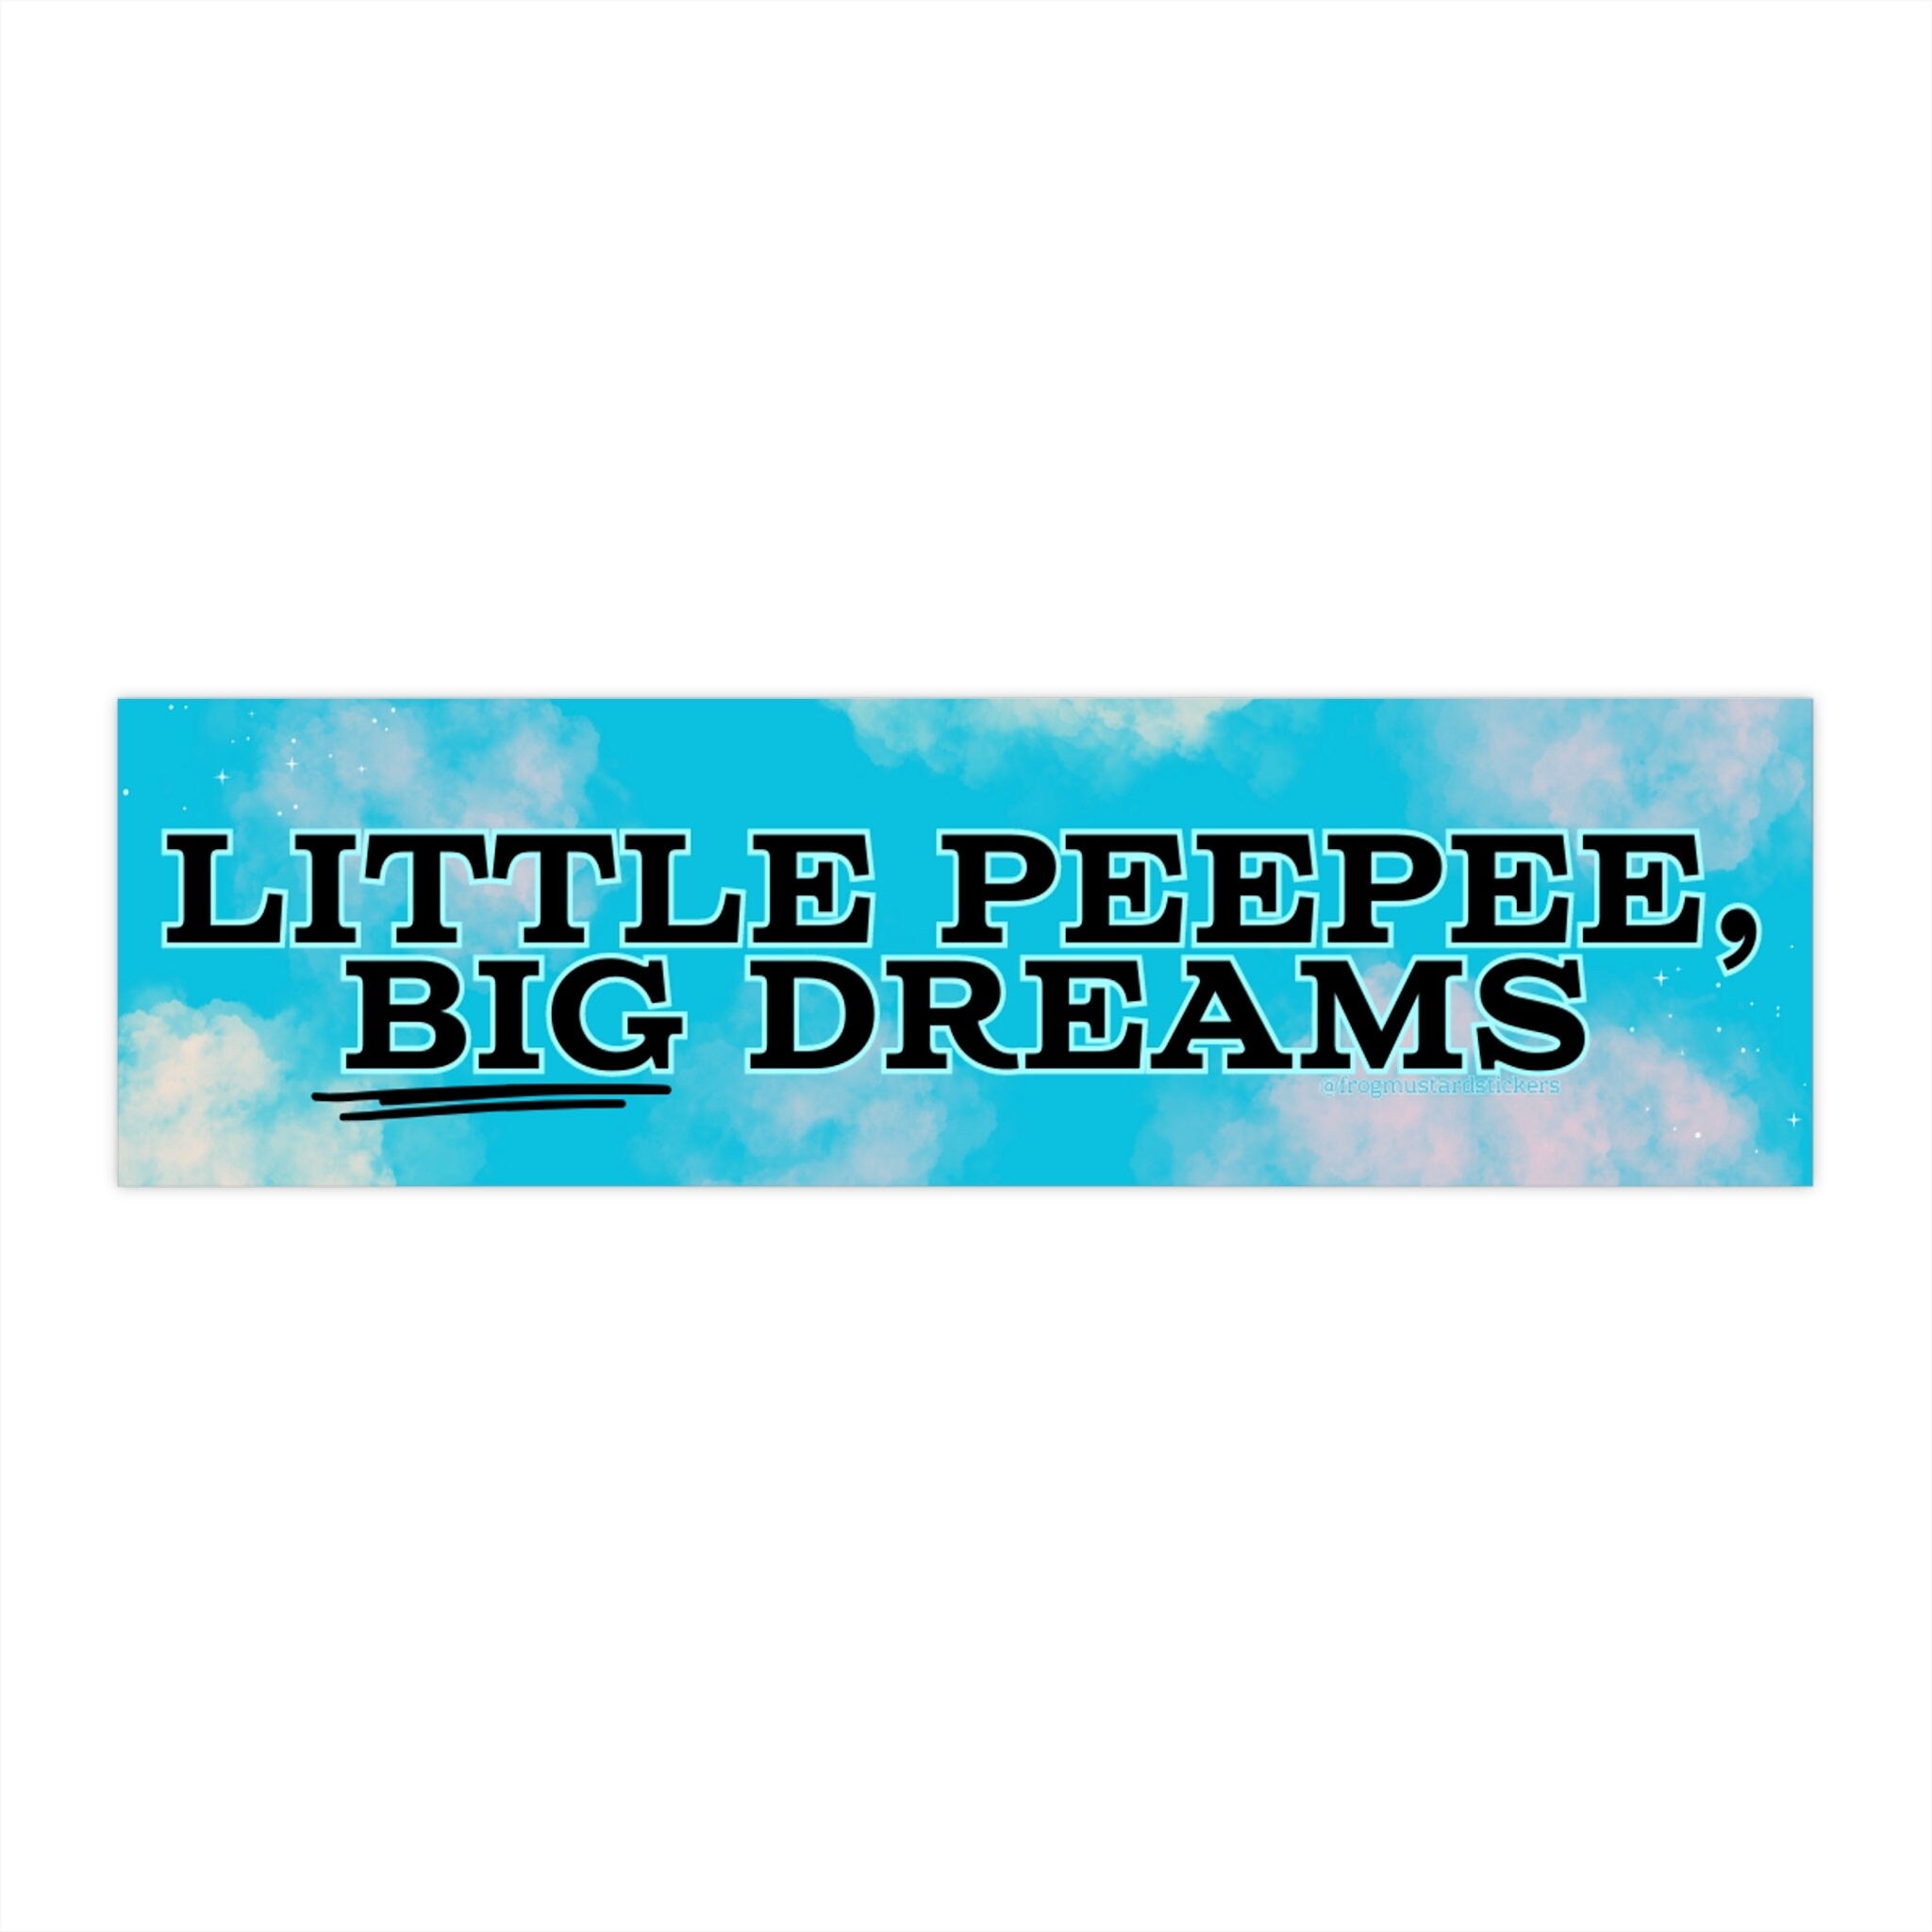 Little Peepee, Big Dreams Bumper Sticker | Funny Prank Joke Gag Bumper Sticker | Bumper Magnet | 8.5" x 2.5"